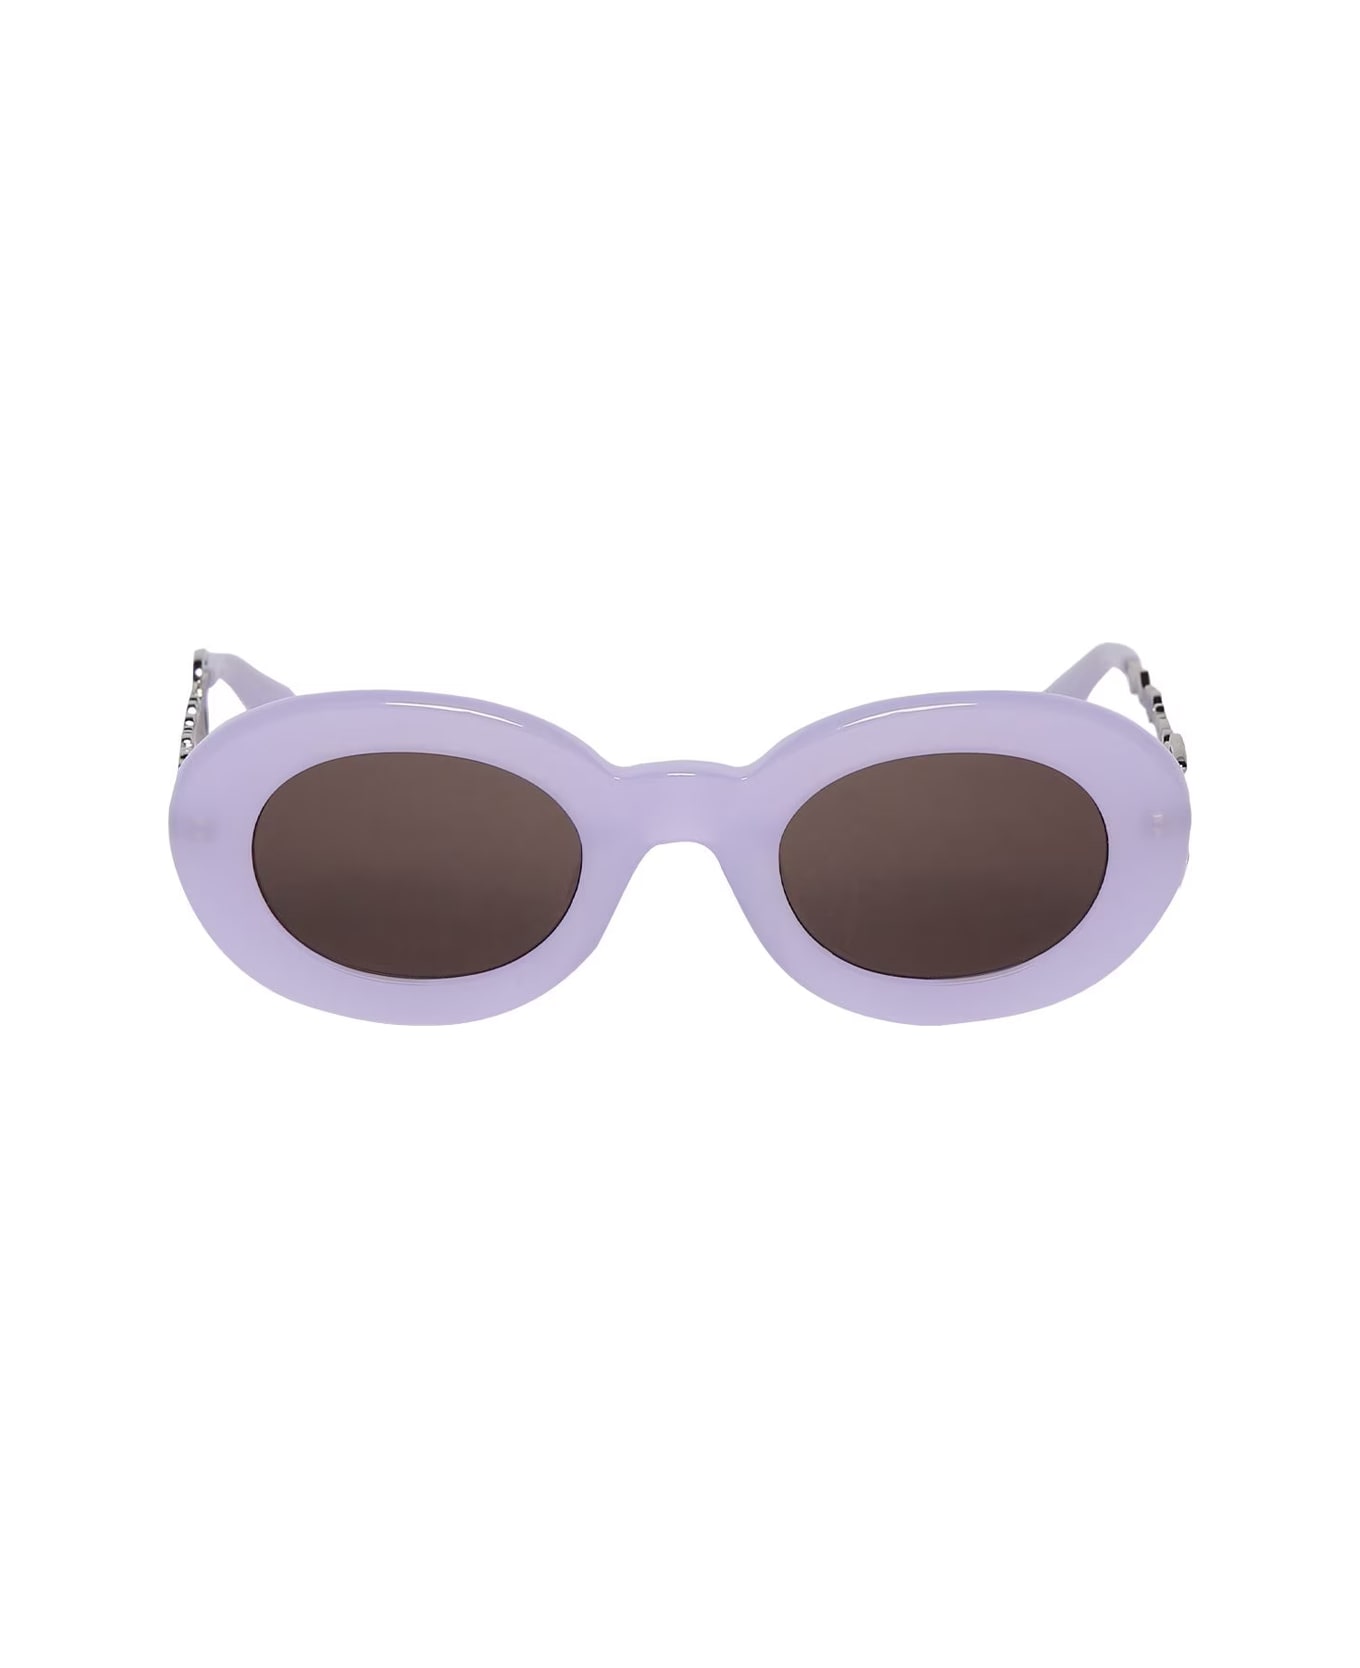 Jacquemus Les Lunettes Pralu Multi Purple Sunglasses - Viola